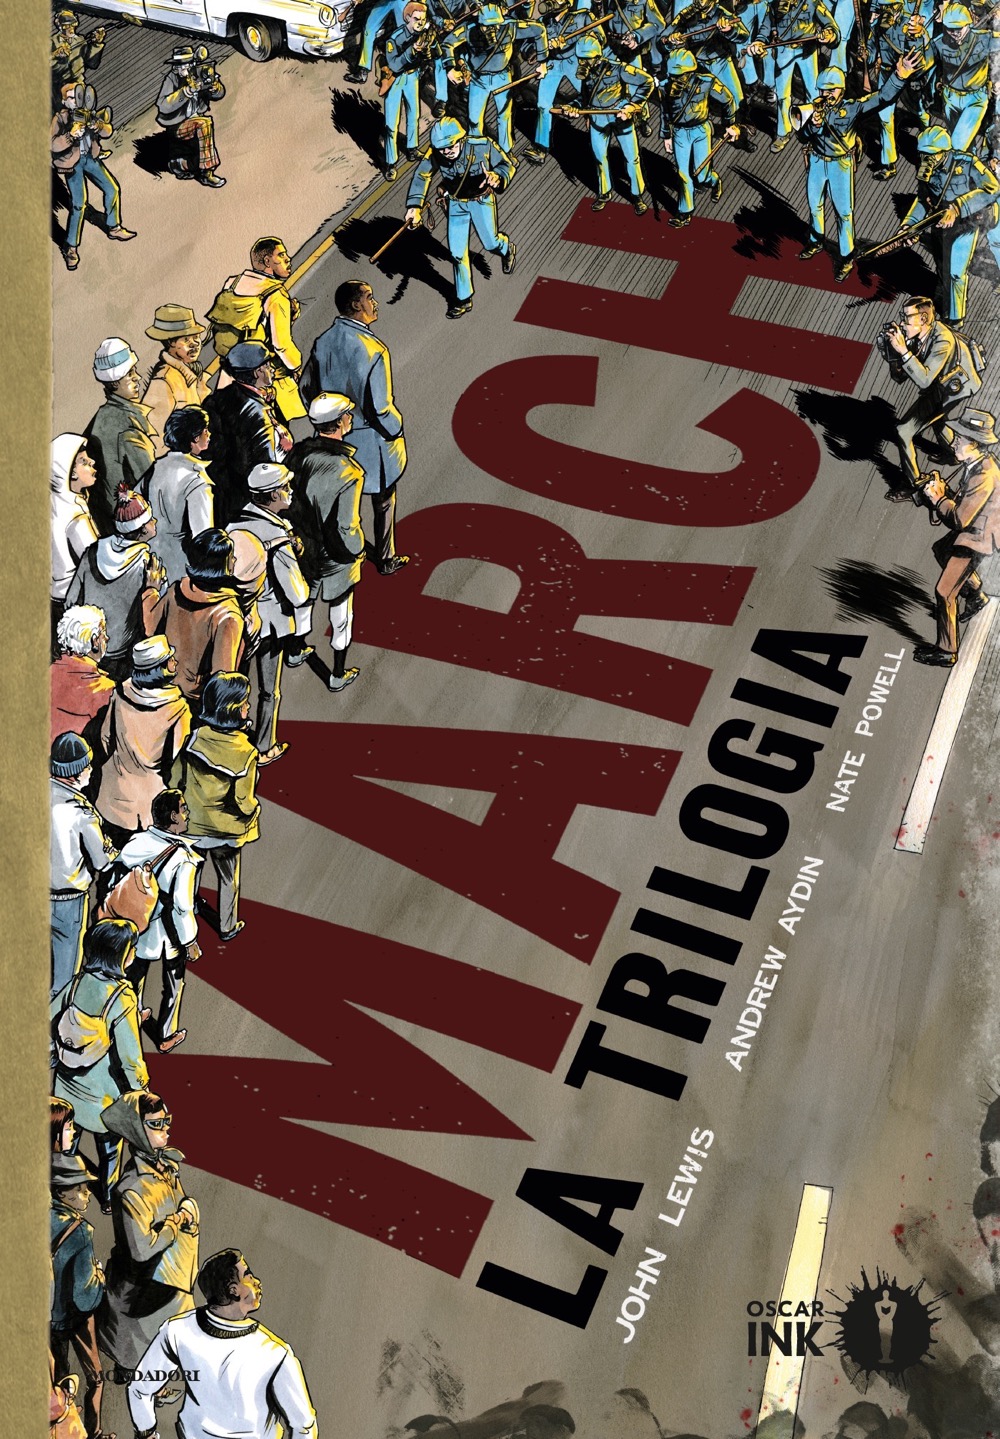 March: La trilogia